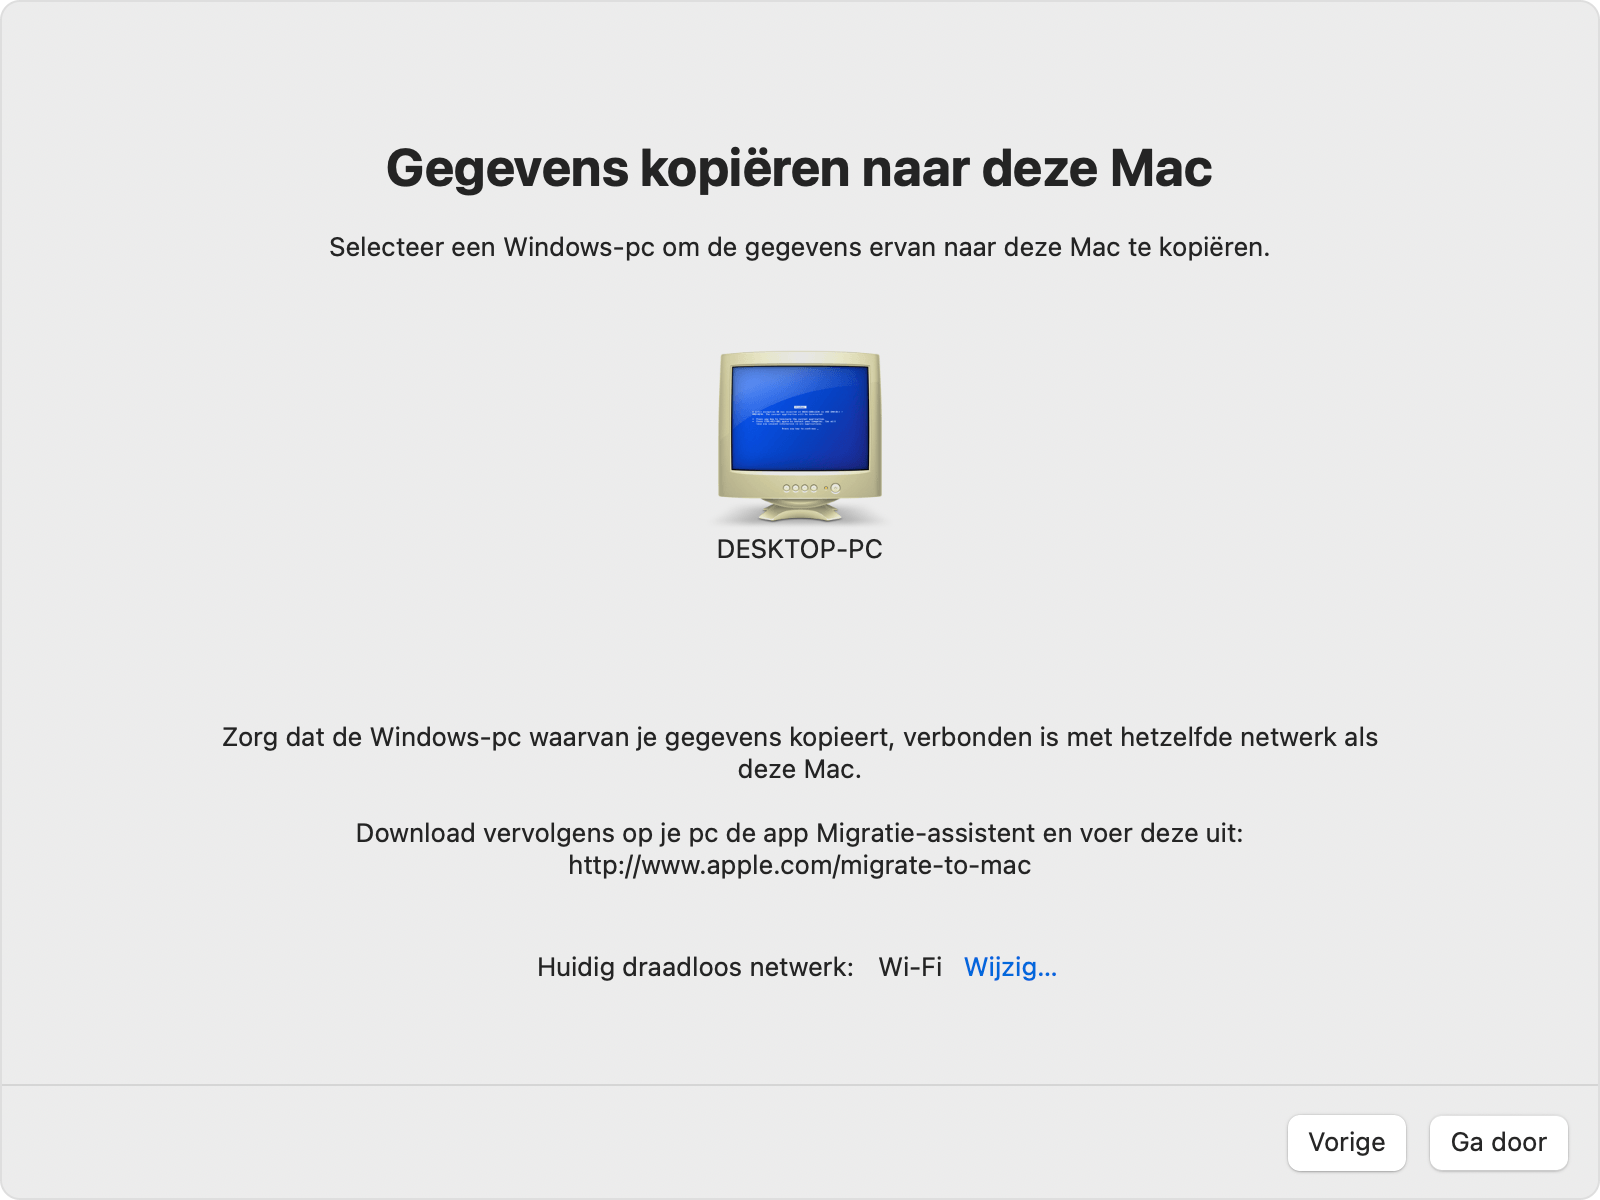 Migratie-assistent op Mac: overzetten 'Van een Windows-pc'